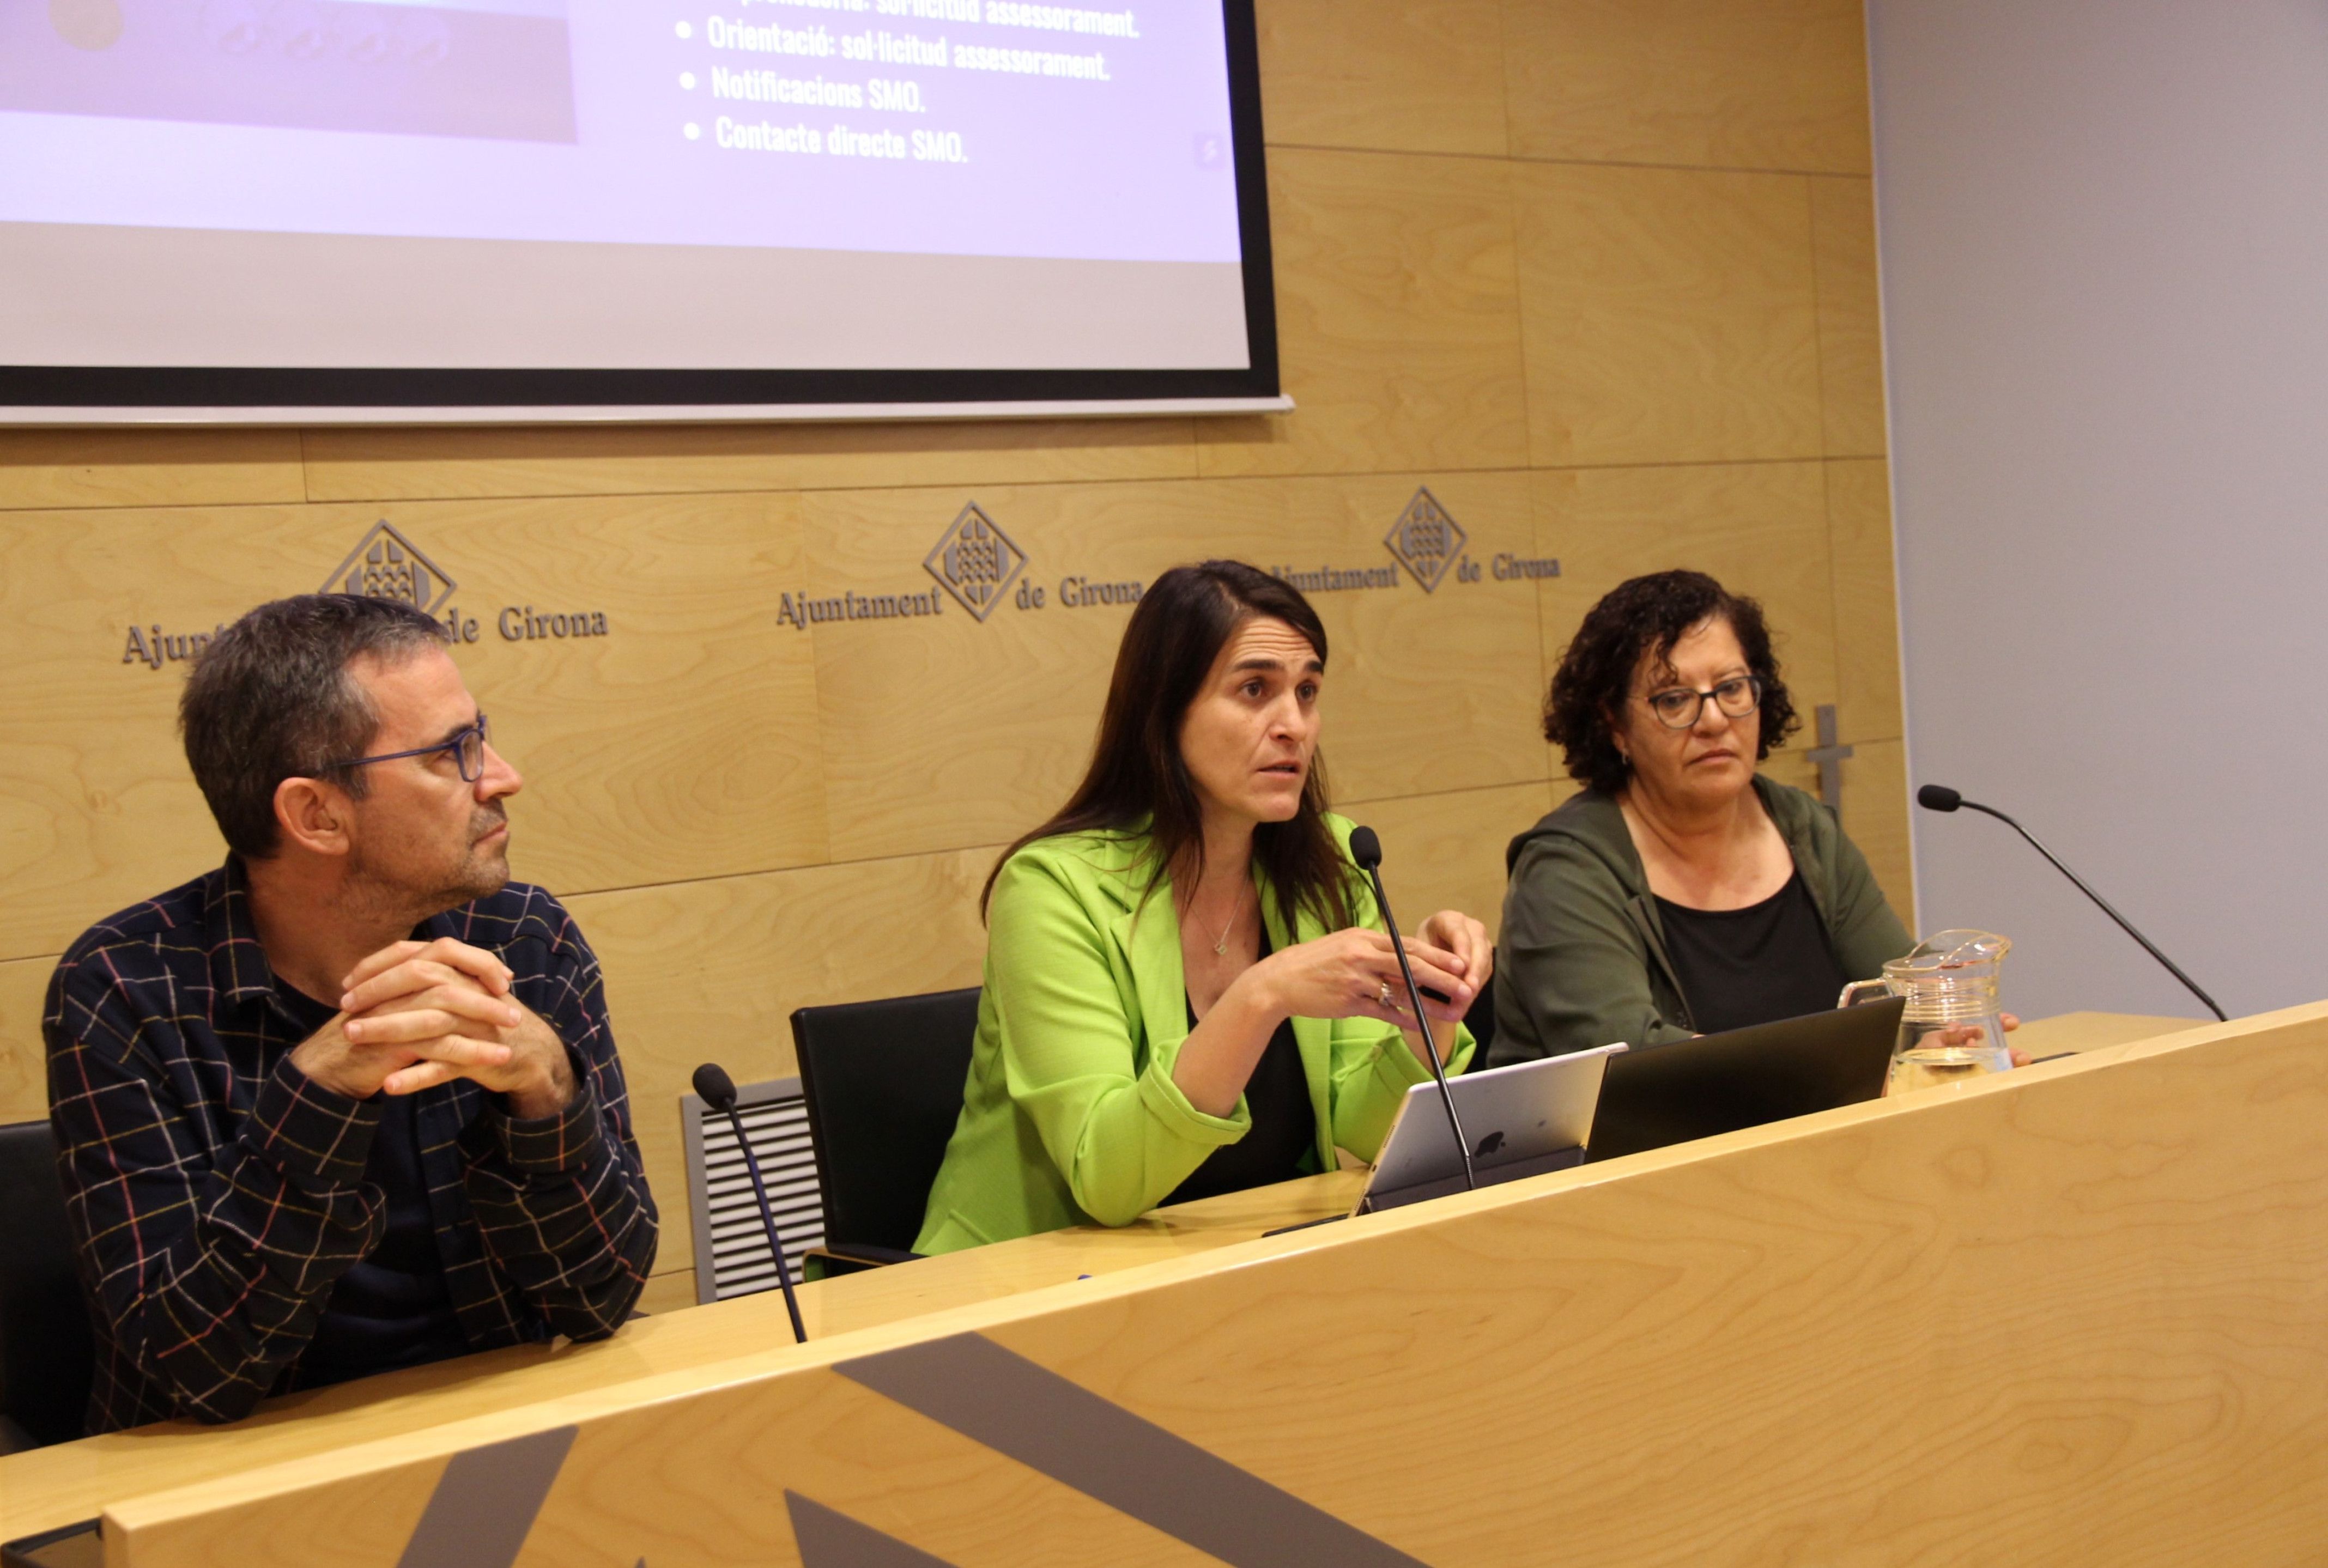 La regidora de Treball de l'Ajuntament de Girona, Raquel Robert, explicant l'app